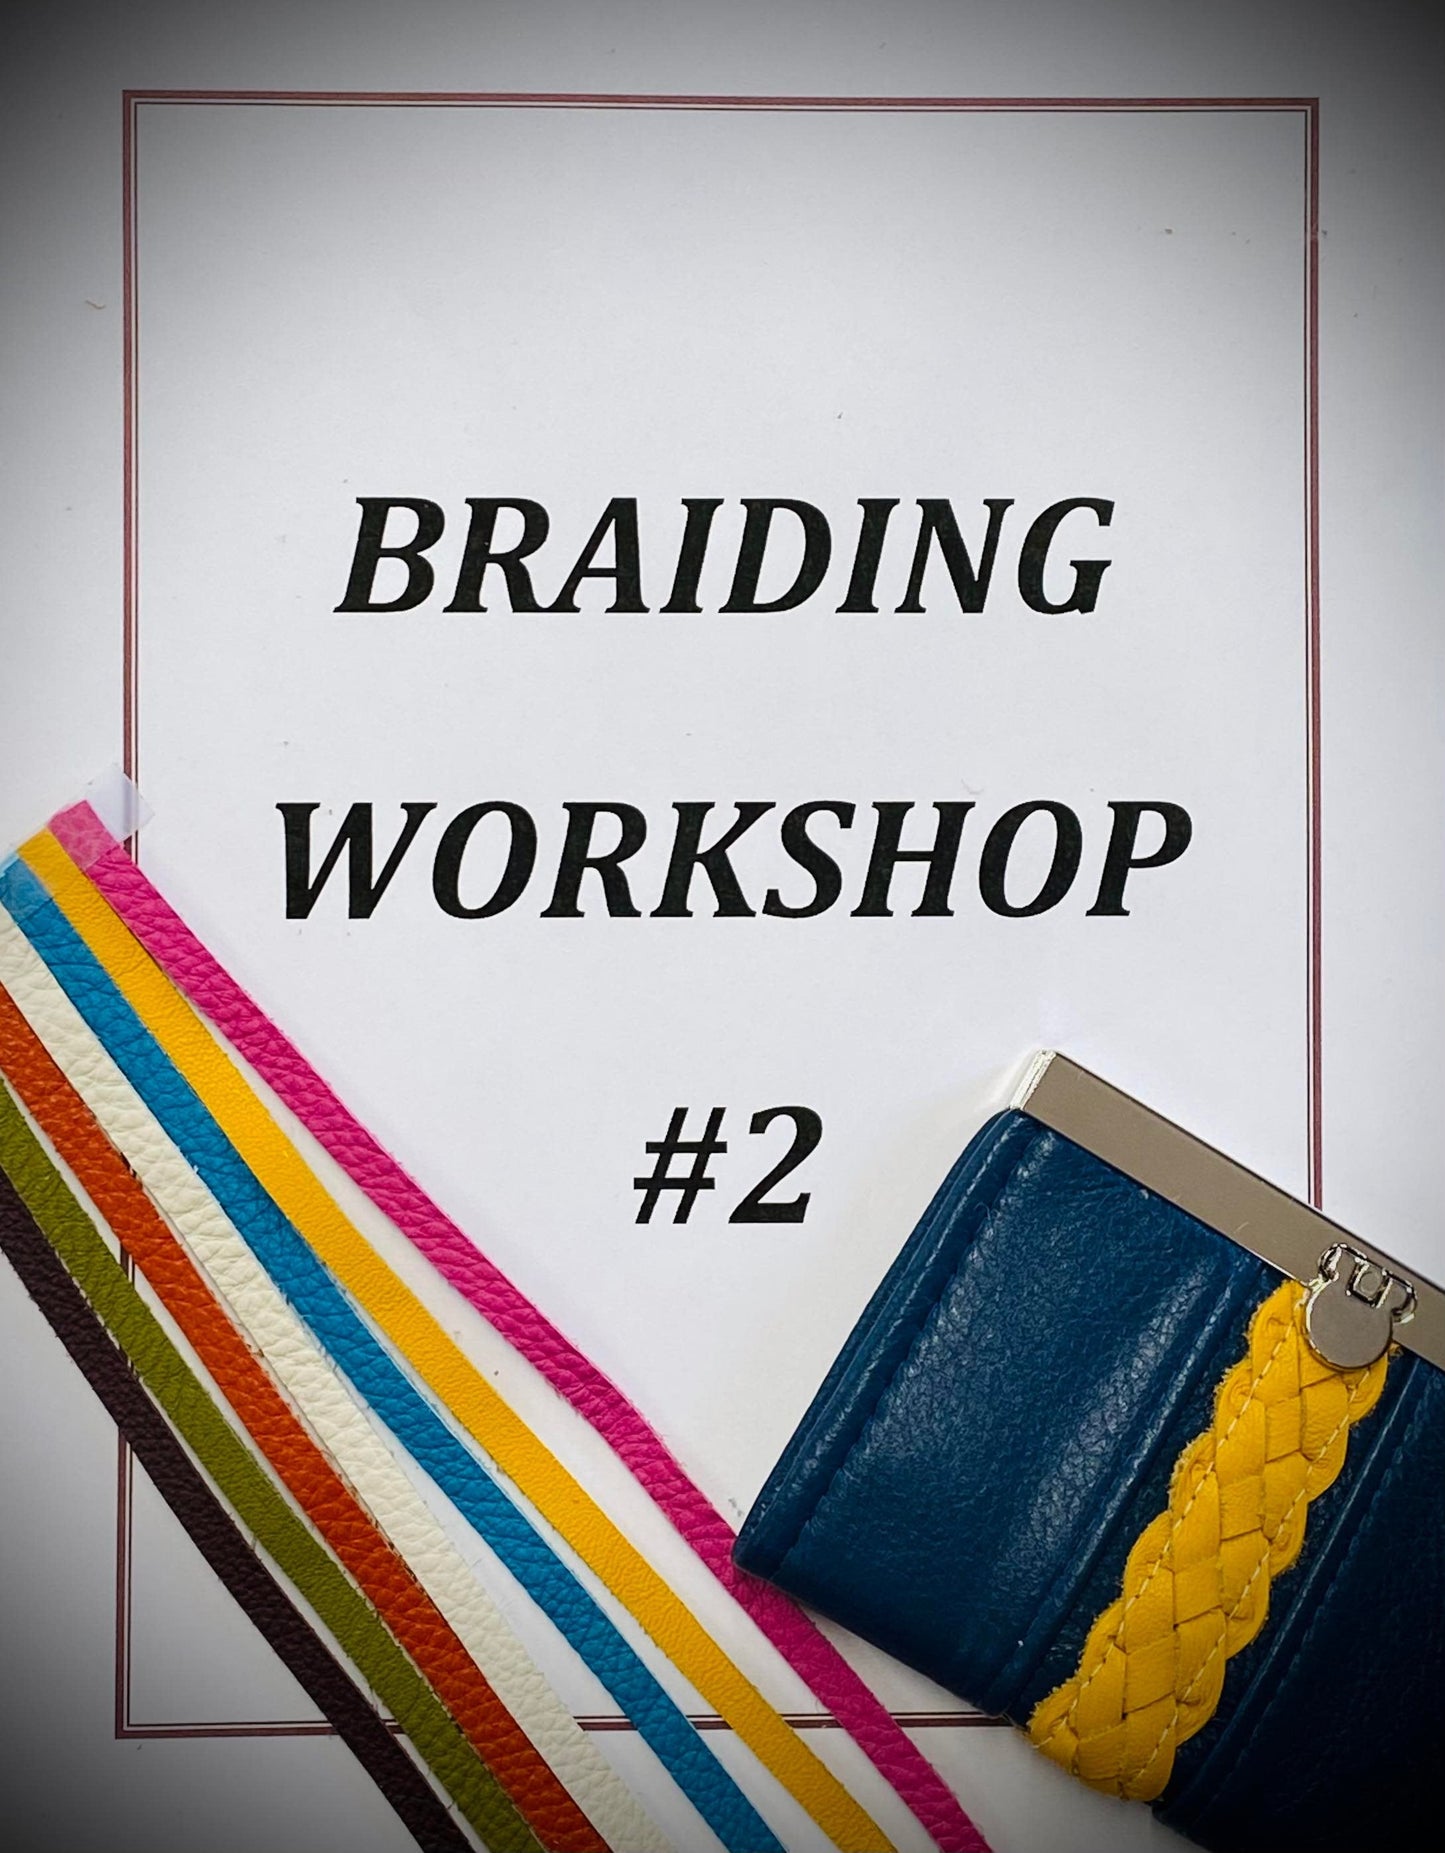 Braiding Techniques Workshop #2- Session 4, Video 2